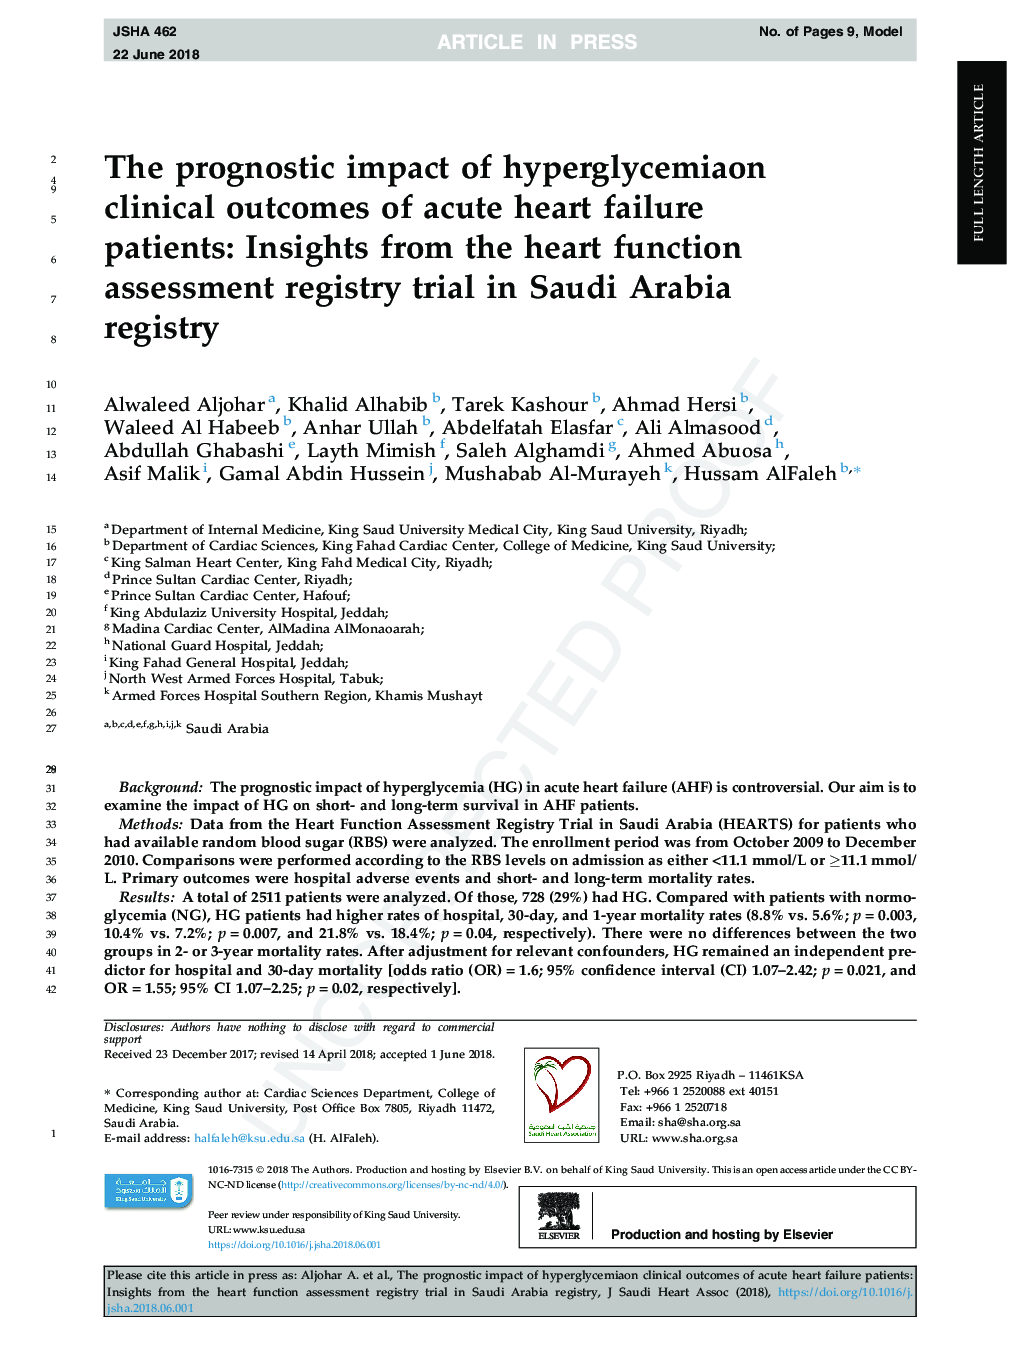 تأثیر پیشآگهی هیپرگلیسمی بر پیامدهای بالینی نارسایی حاد قلبی: بینش از پرونده ارزیابی عملکرد قلب در عربستان سعودی 